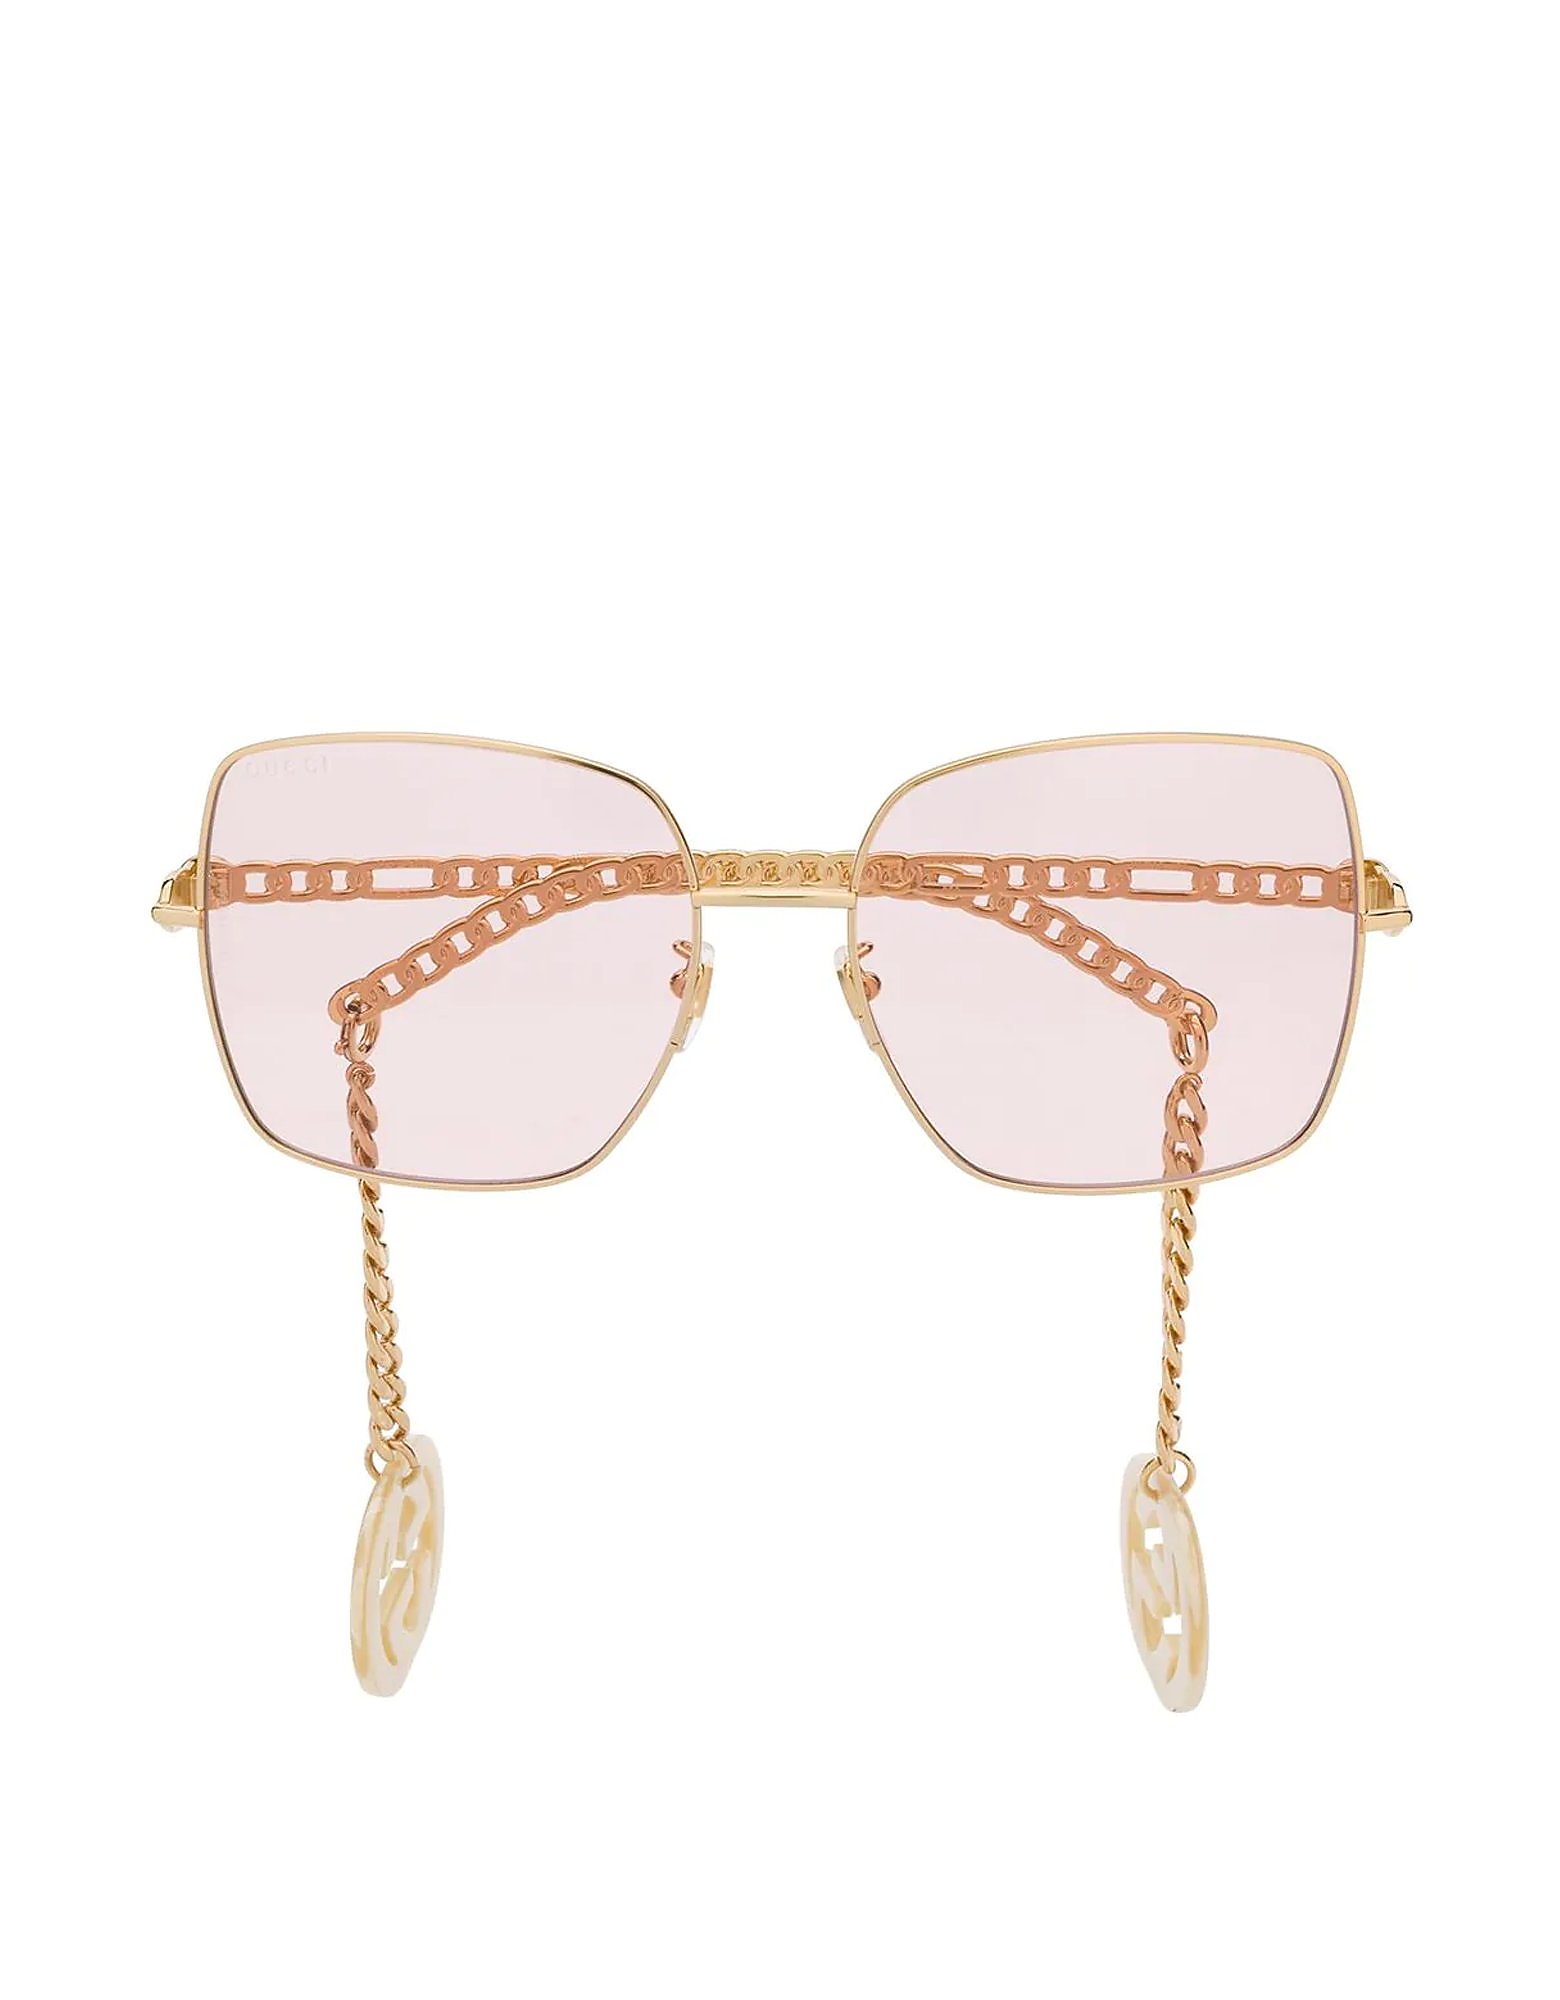 Top 100 Italian Designer Sunglasses - Italia Mia